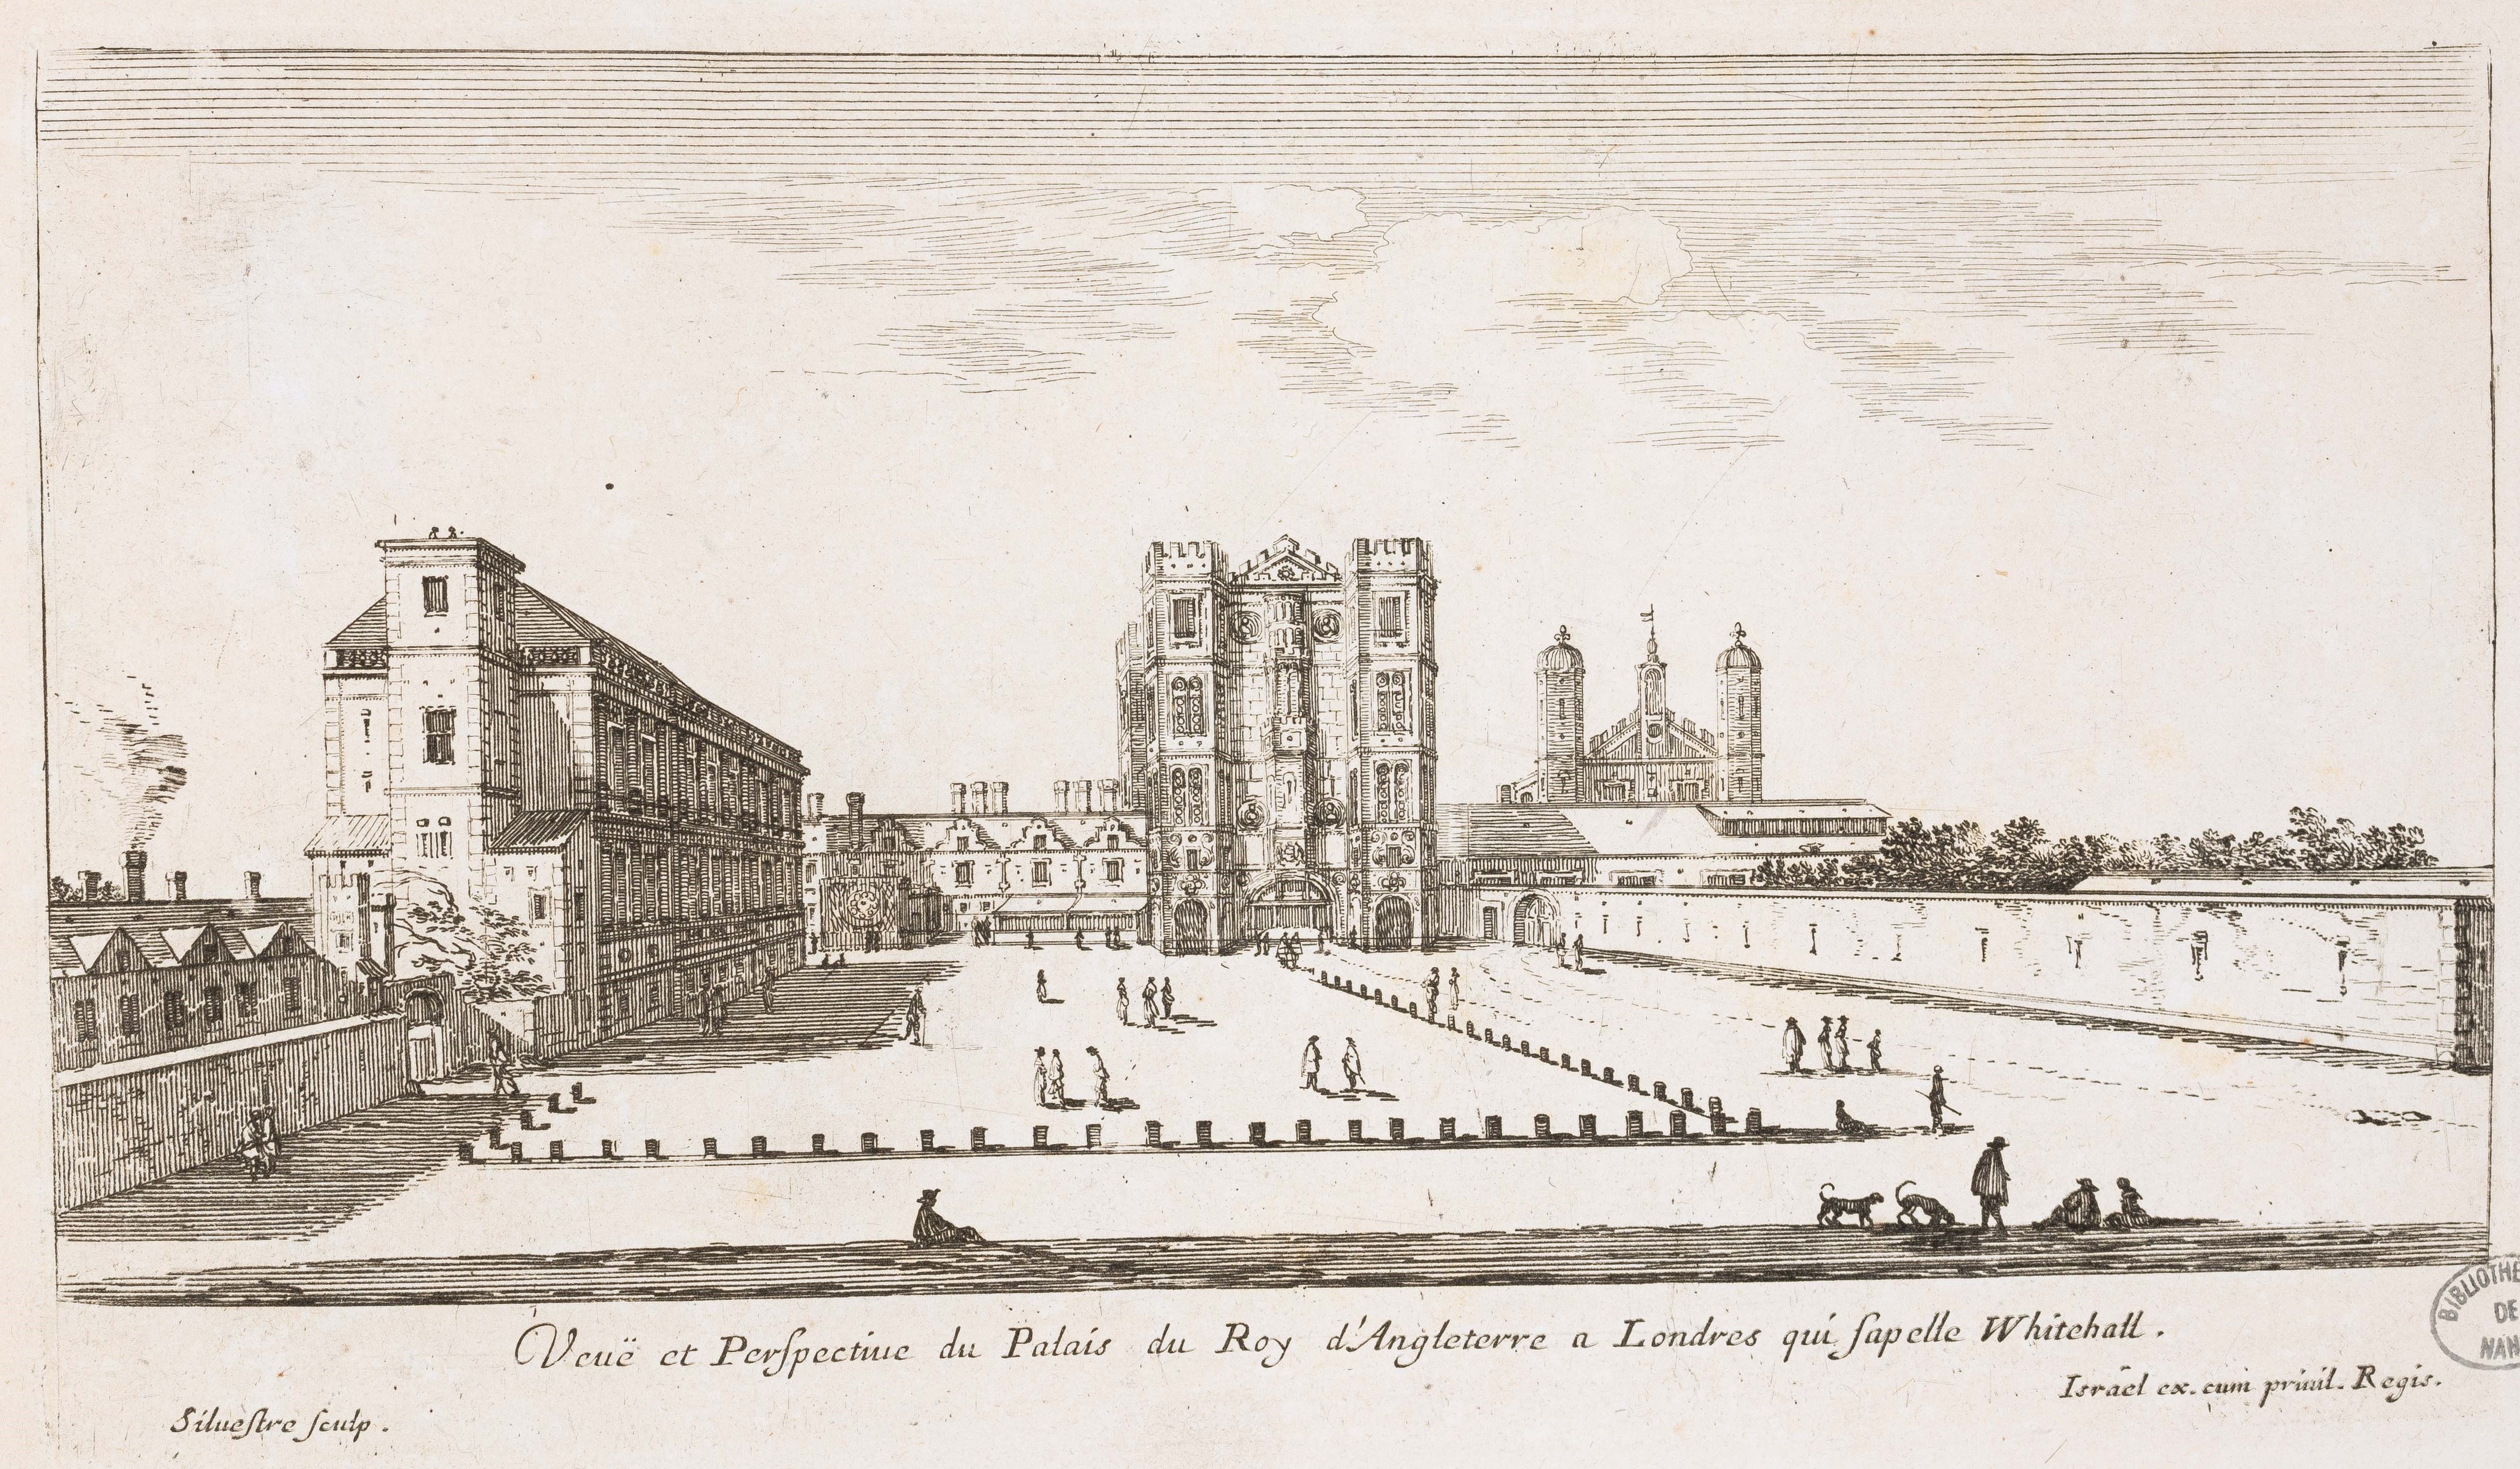 Israël Silvestre : Veuë et Perspective du Palais du Roy d'Angleterre a Londres qui s'apelle Whitehall.